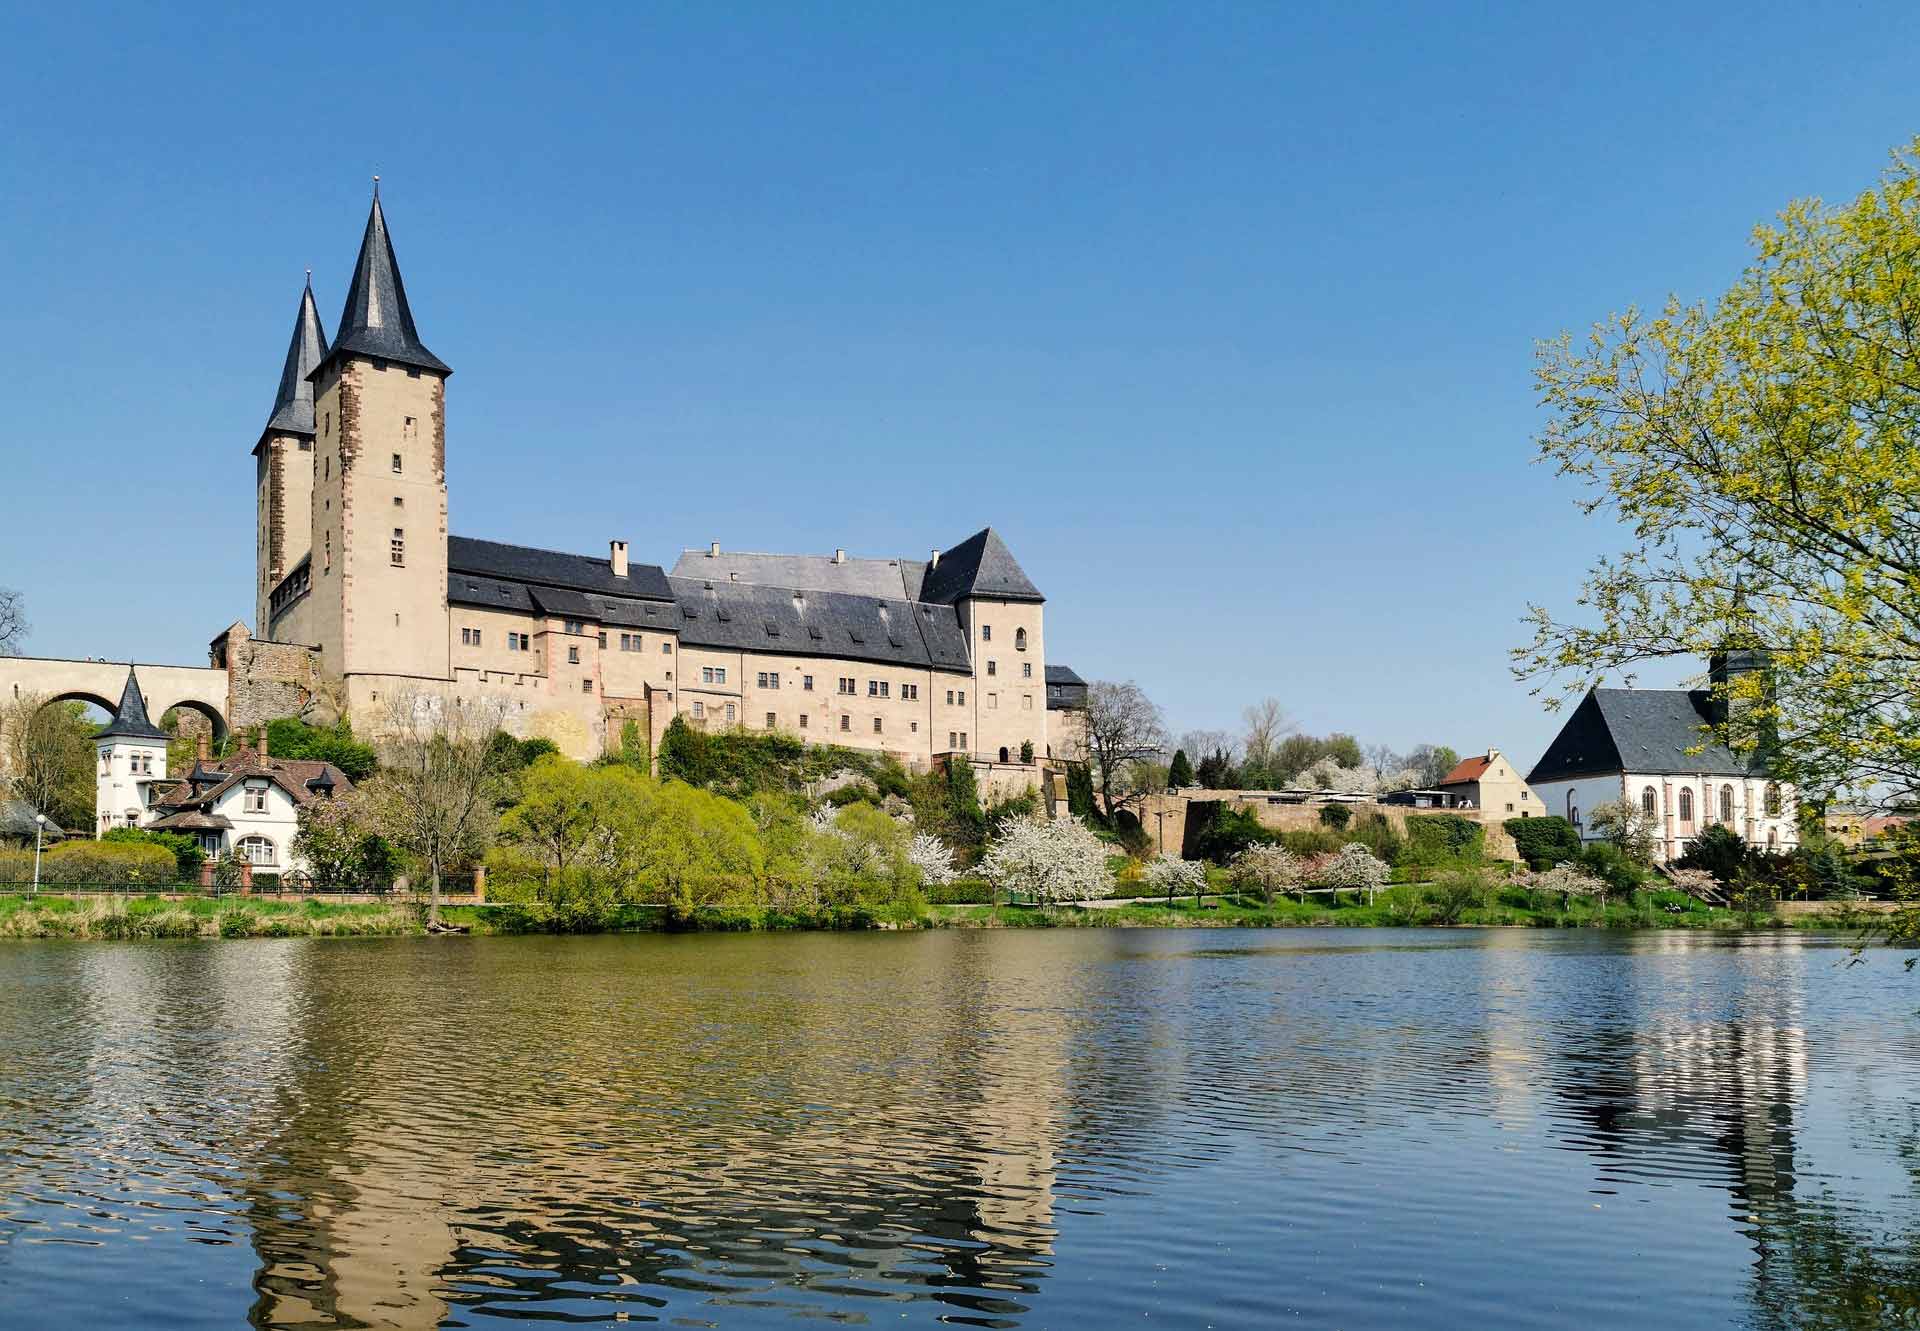 Die majestätische Silhouette des Schlosses Rochlitzberg überragt die Landschaft, ein beeindruckendes Symbol vergangener Pracht und Geschichte, das bis heute fasziniert.